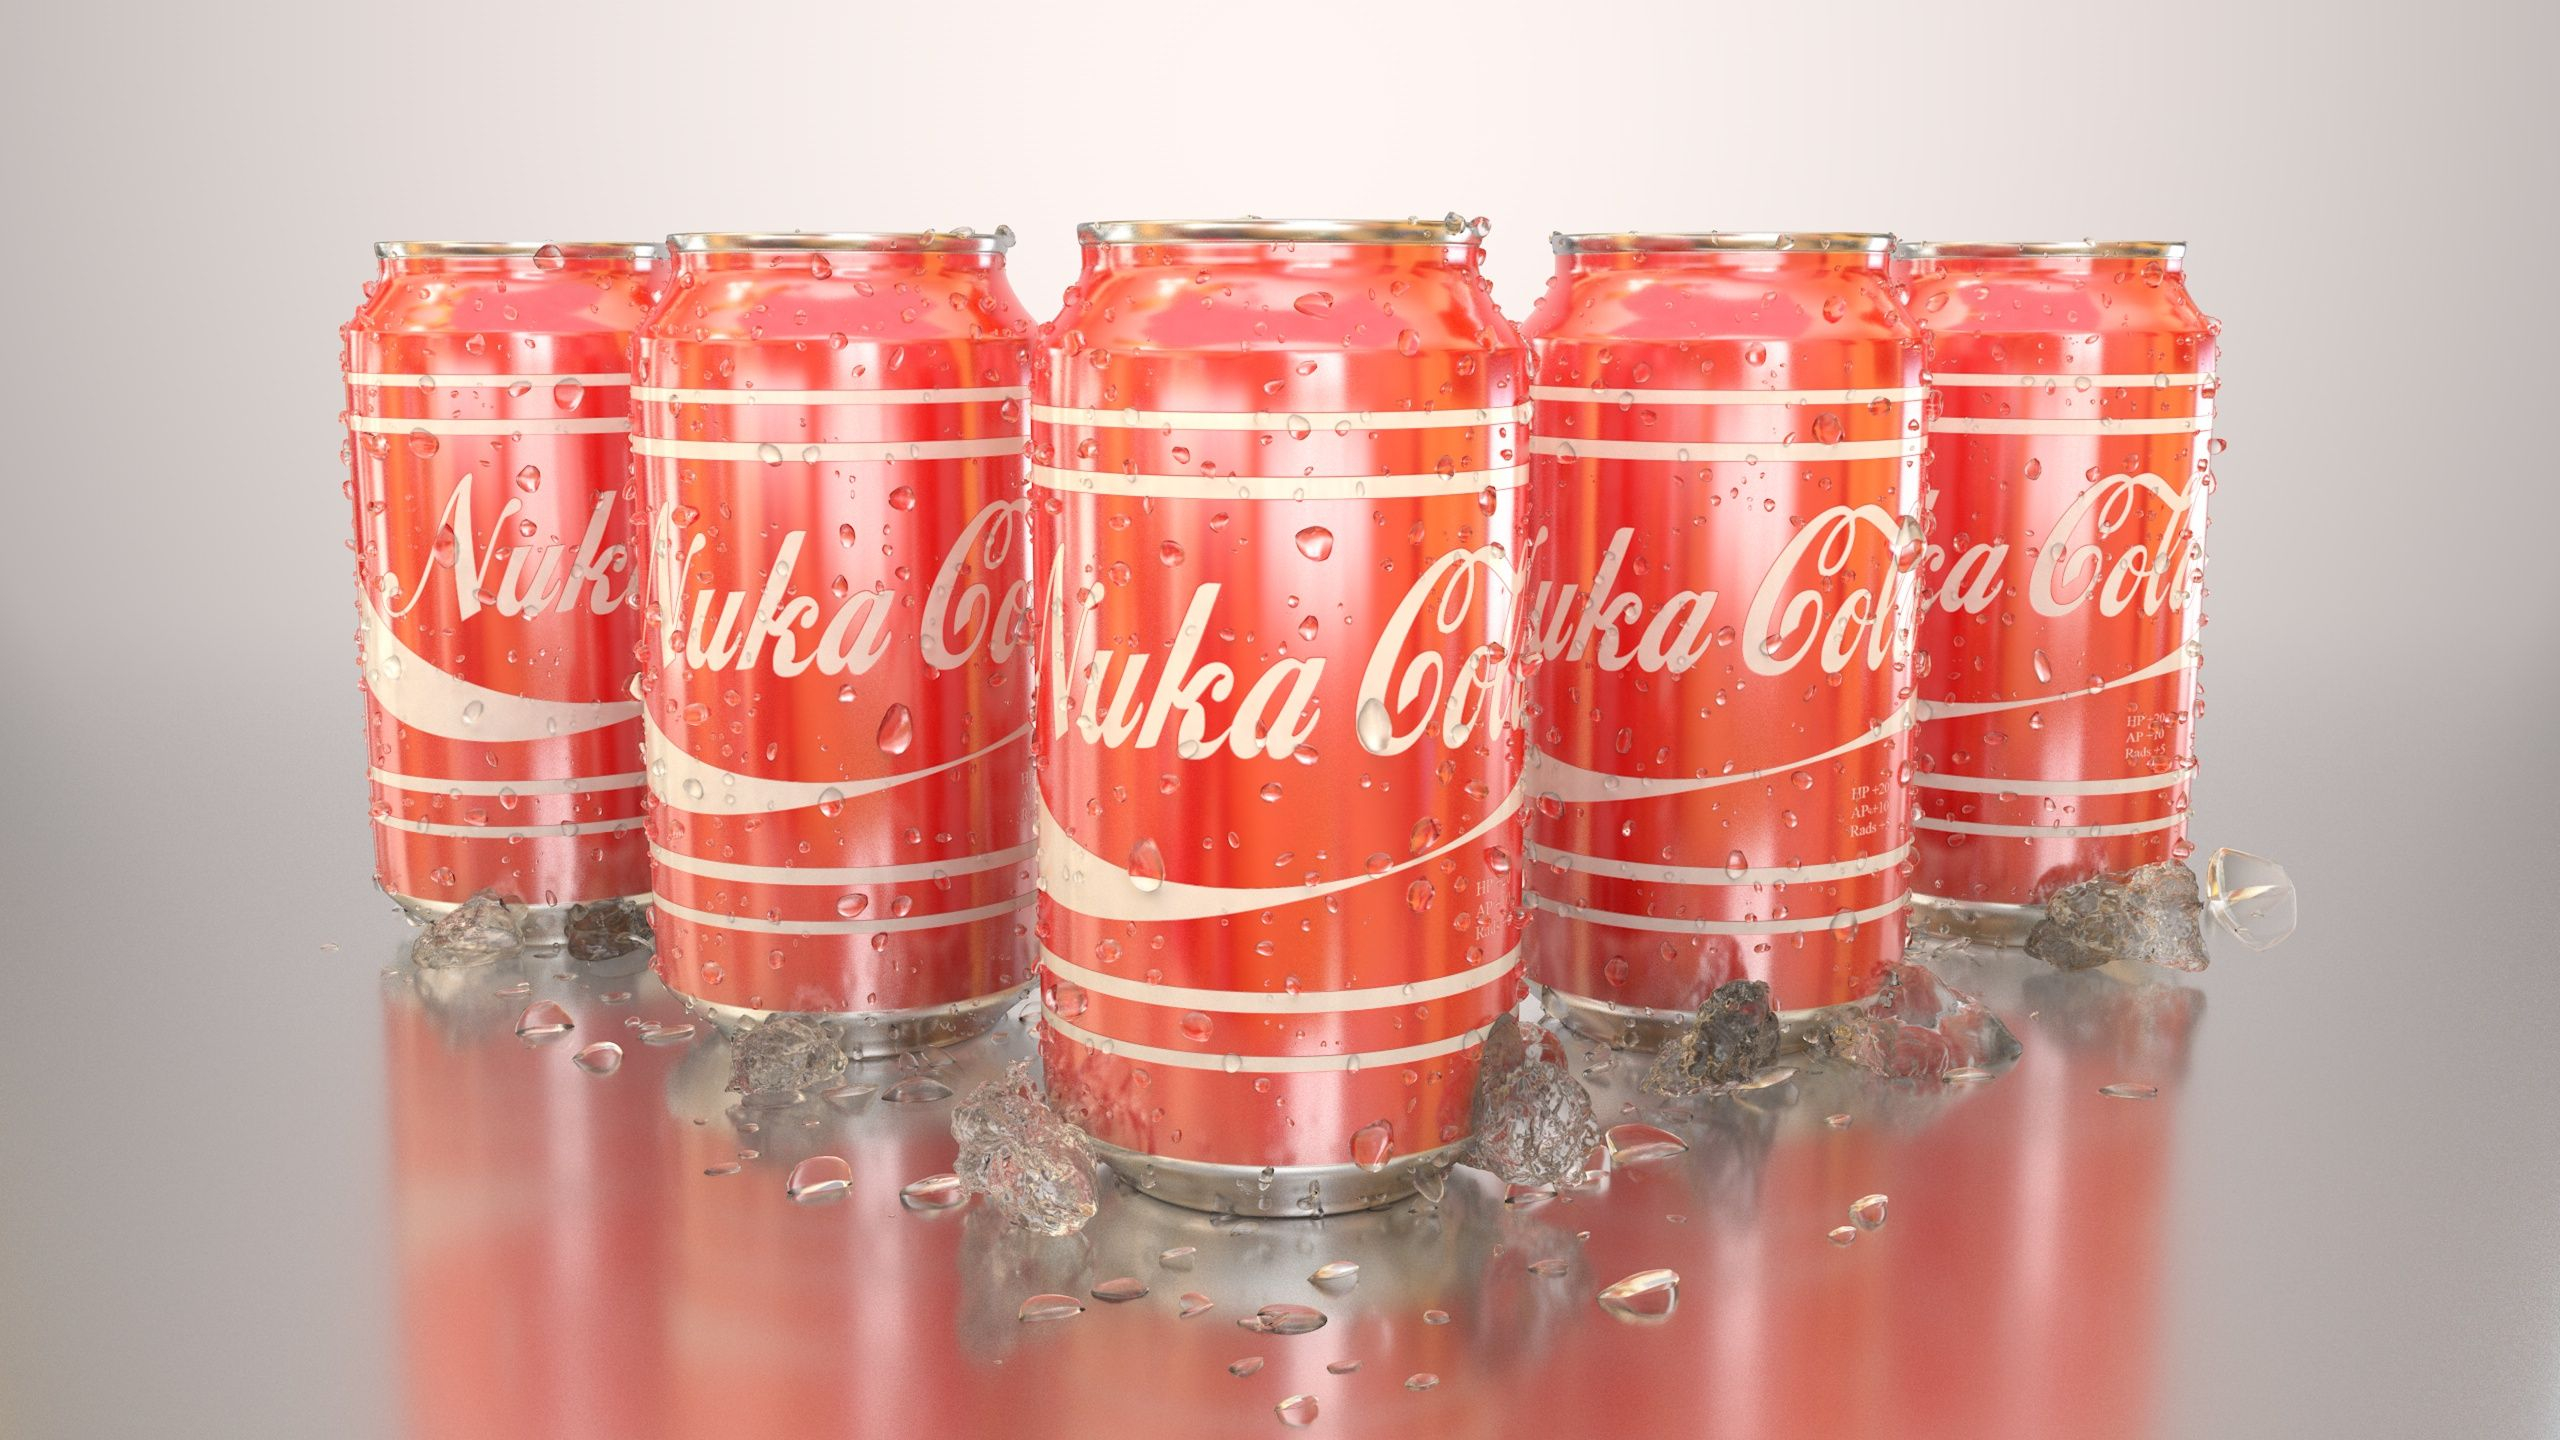 2560x1440 Nuka Cola Cans (1440p) | Wallpaper, R wallpaper, Hd wallpaper